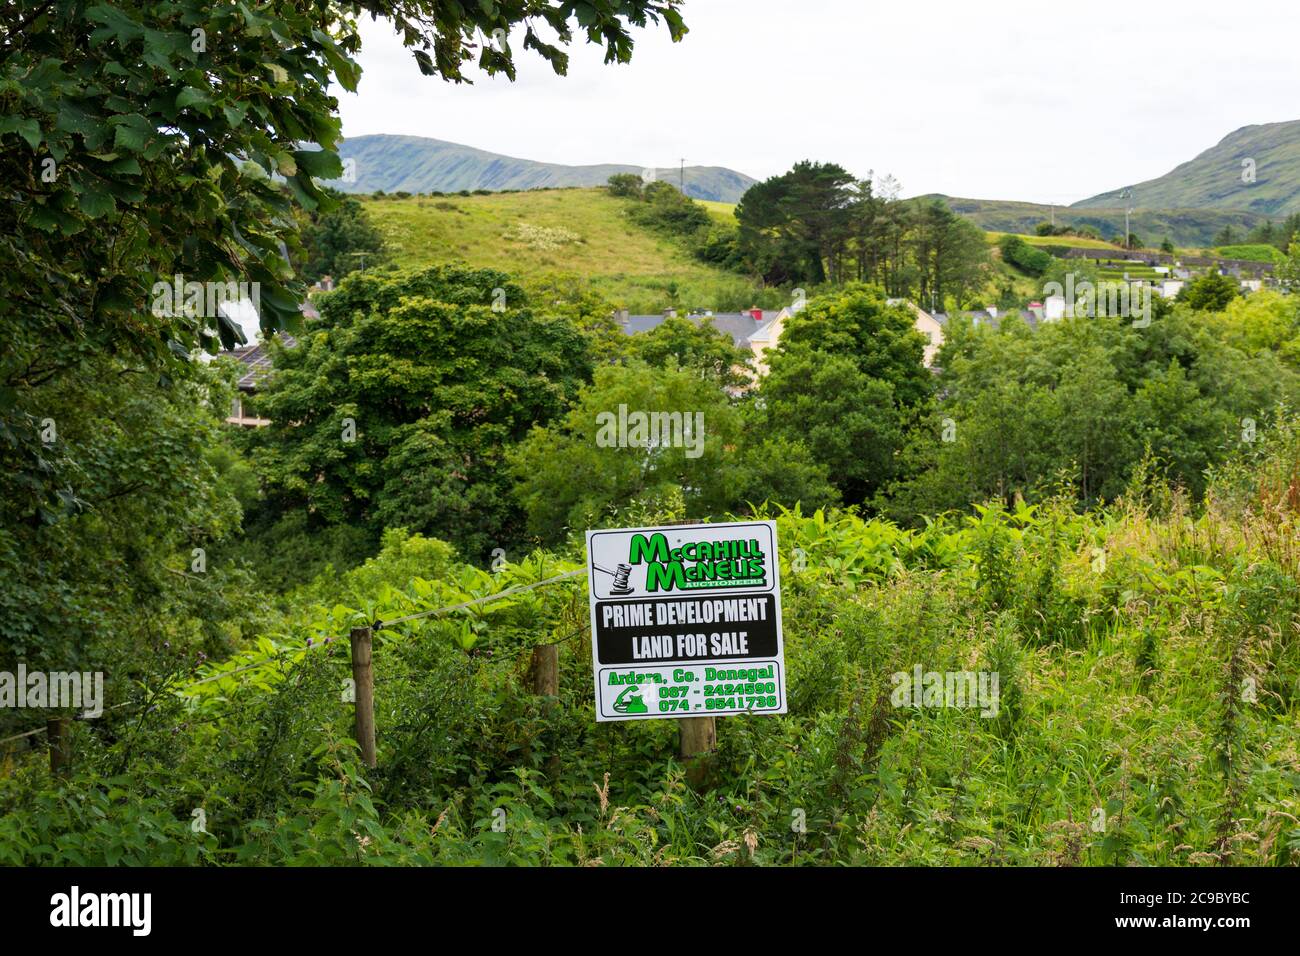 Premier terrain de développement pour la vente signalisation dans les zones rurales de l'Irlande, comté Donegal. Banque D'Images